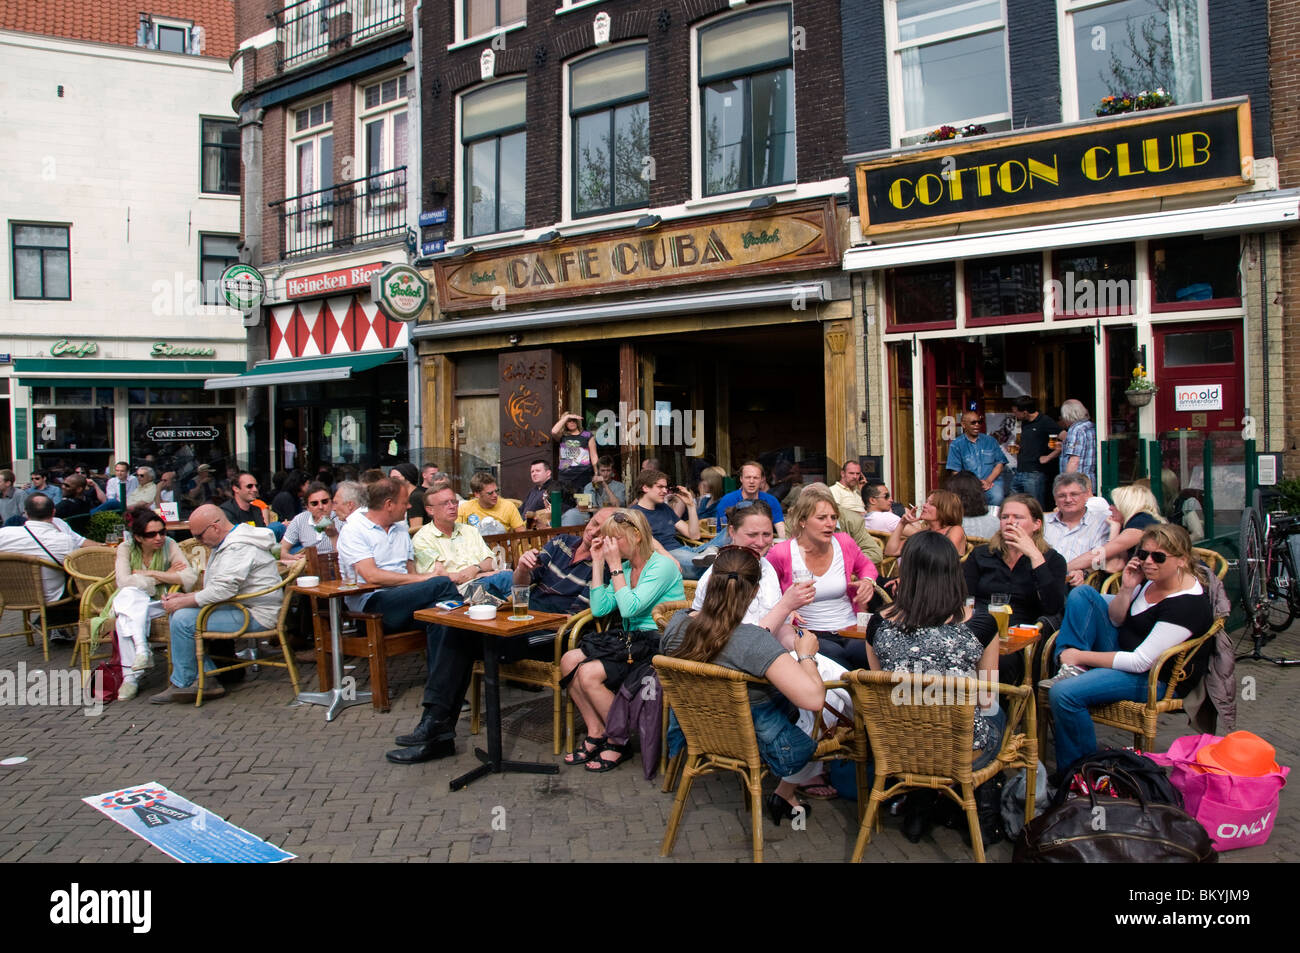 kijken Begraafplaats Schaduw Cafe Cuba Cotton Club Nieuwmarkt Amsterdam Cafe Restaurant bar pub  Netherlands Stock Photo - Alamy